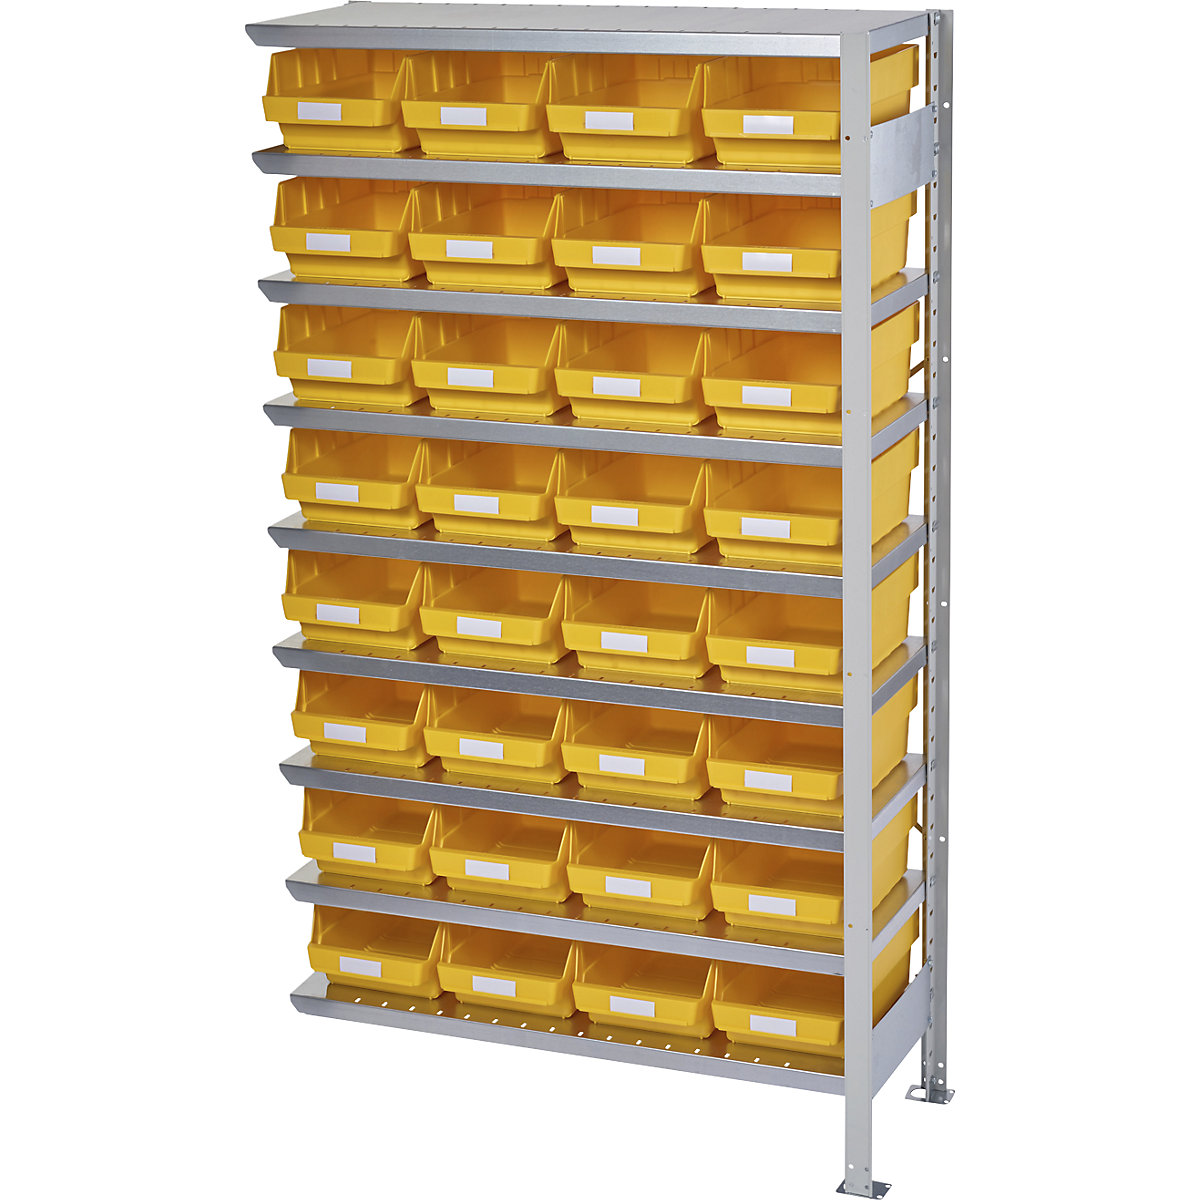 Összedugaszolós állvány dobozokkal – STEMO, állványmagasság 1790 mm, bővítő állvány, 400 mm mély, 32 sárga doboz-5